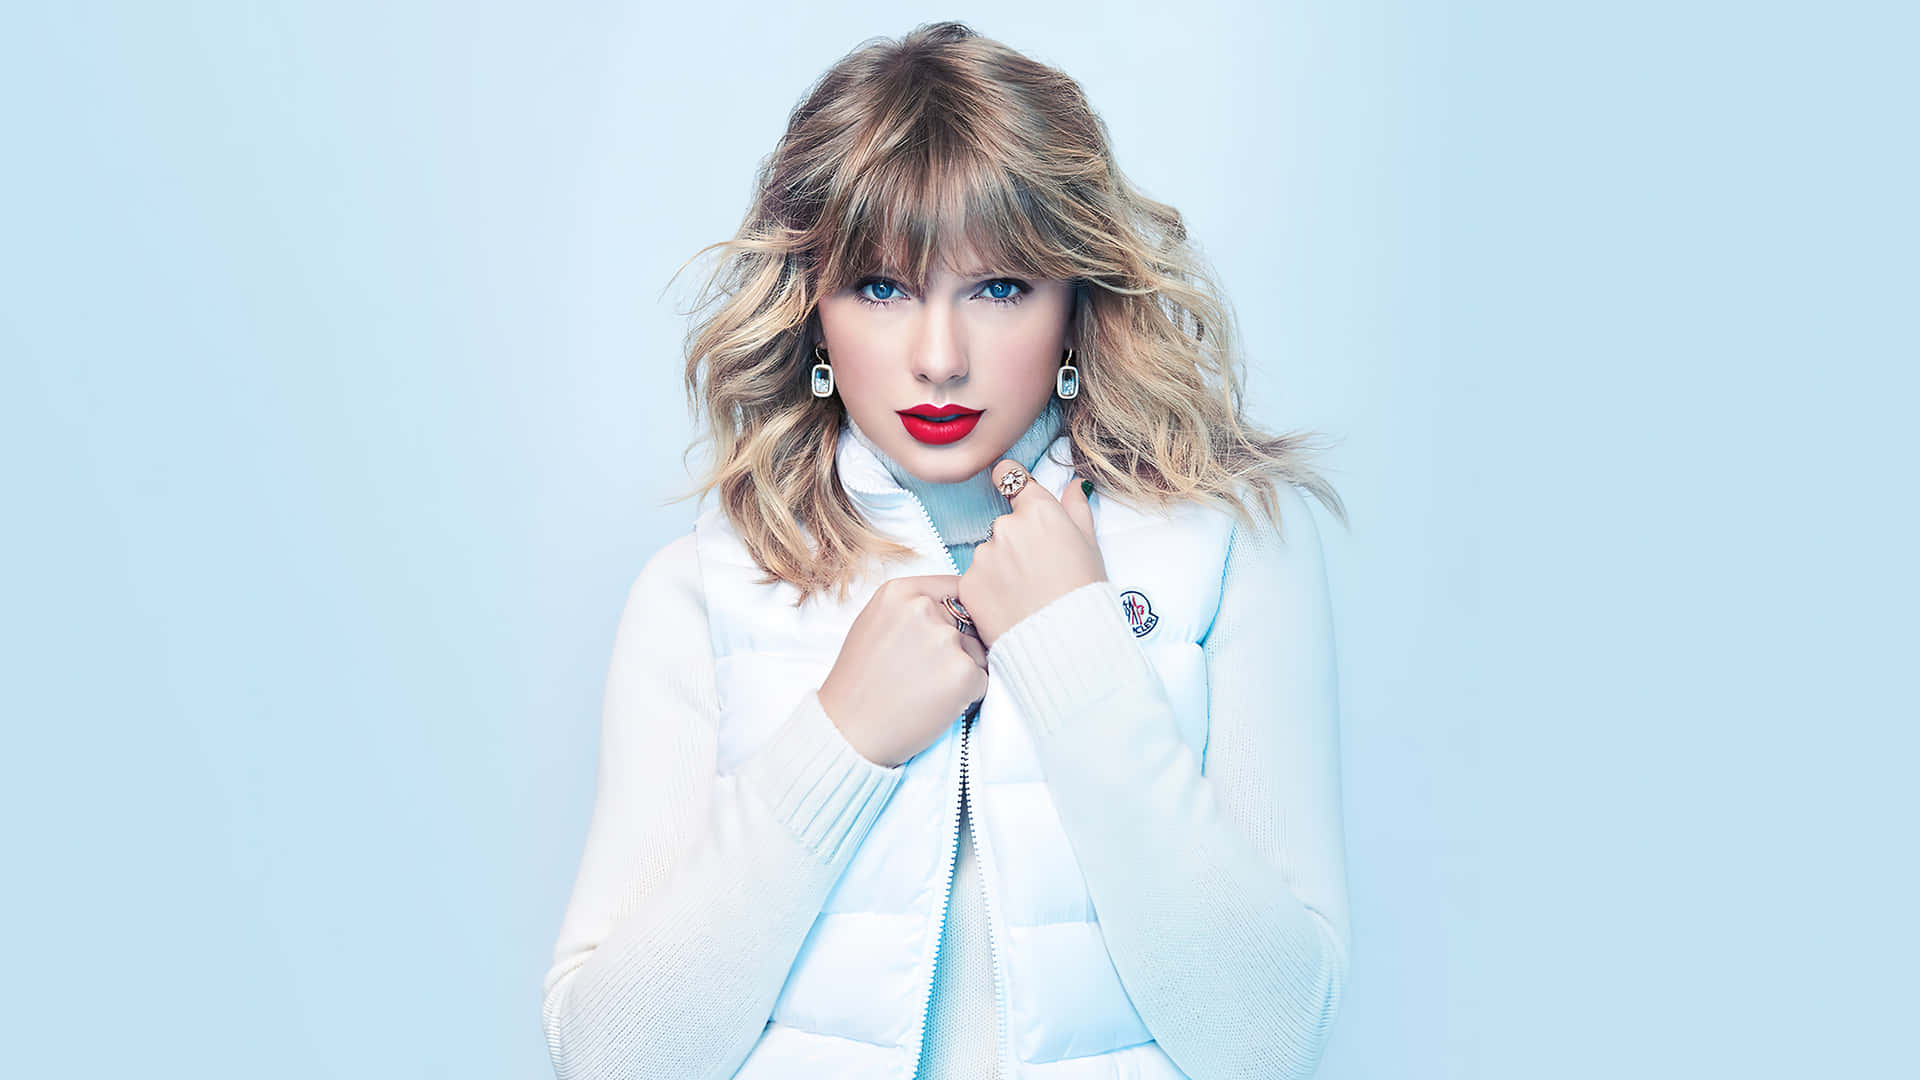 Singer Taylor Swift Background